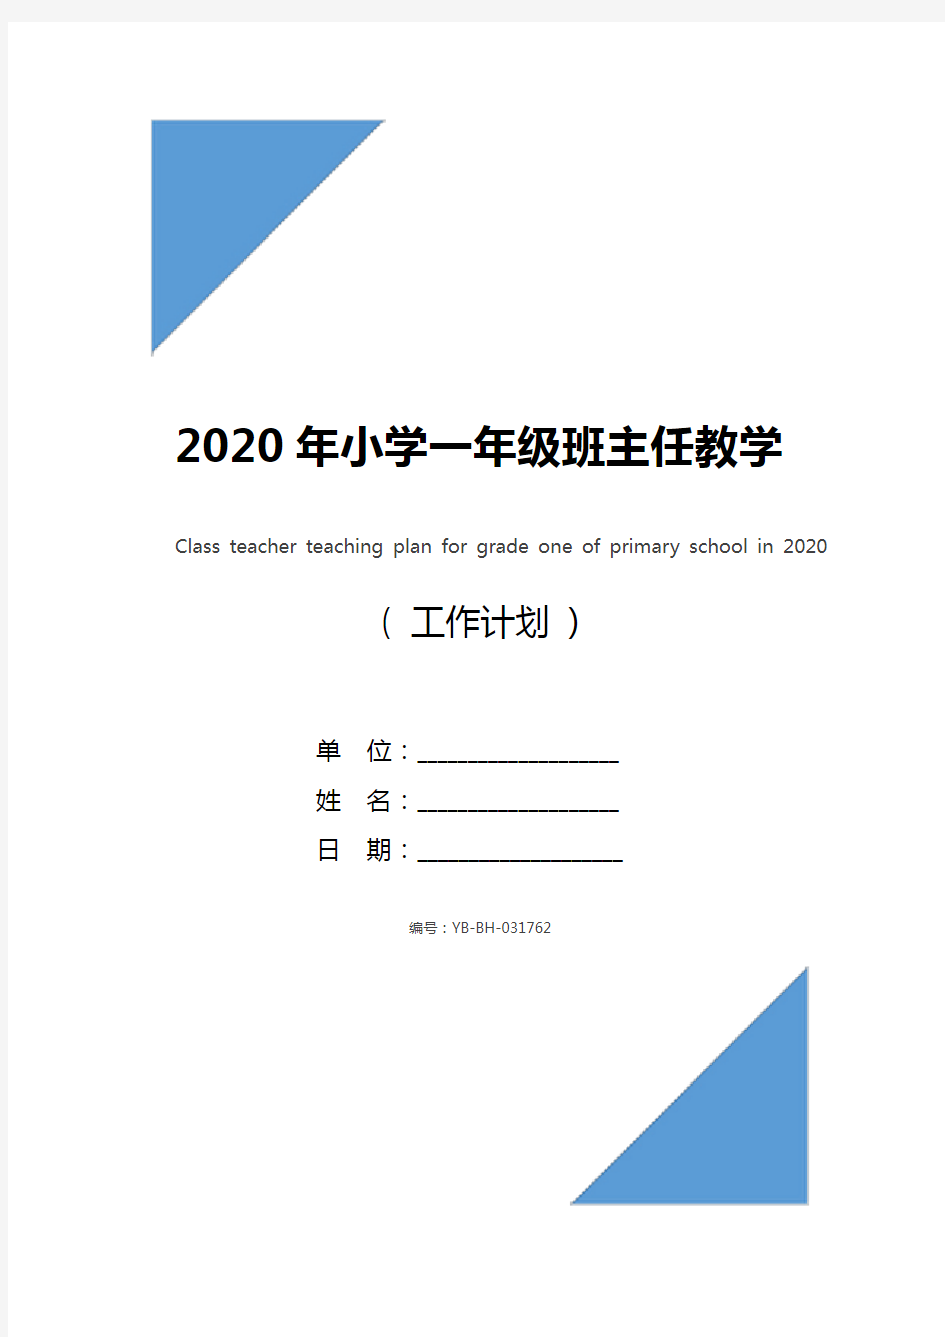 2020年小学一年级班主任教学计划